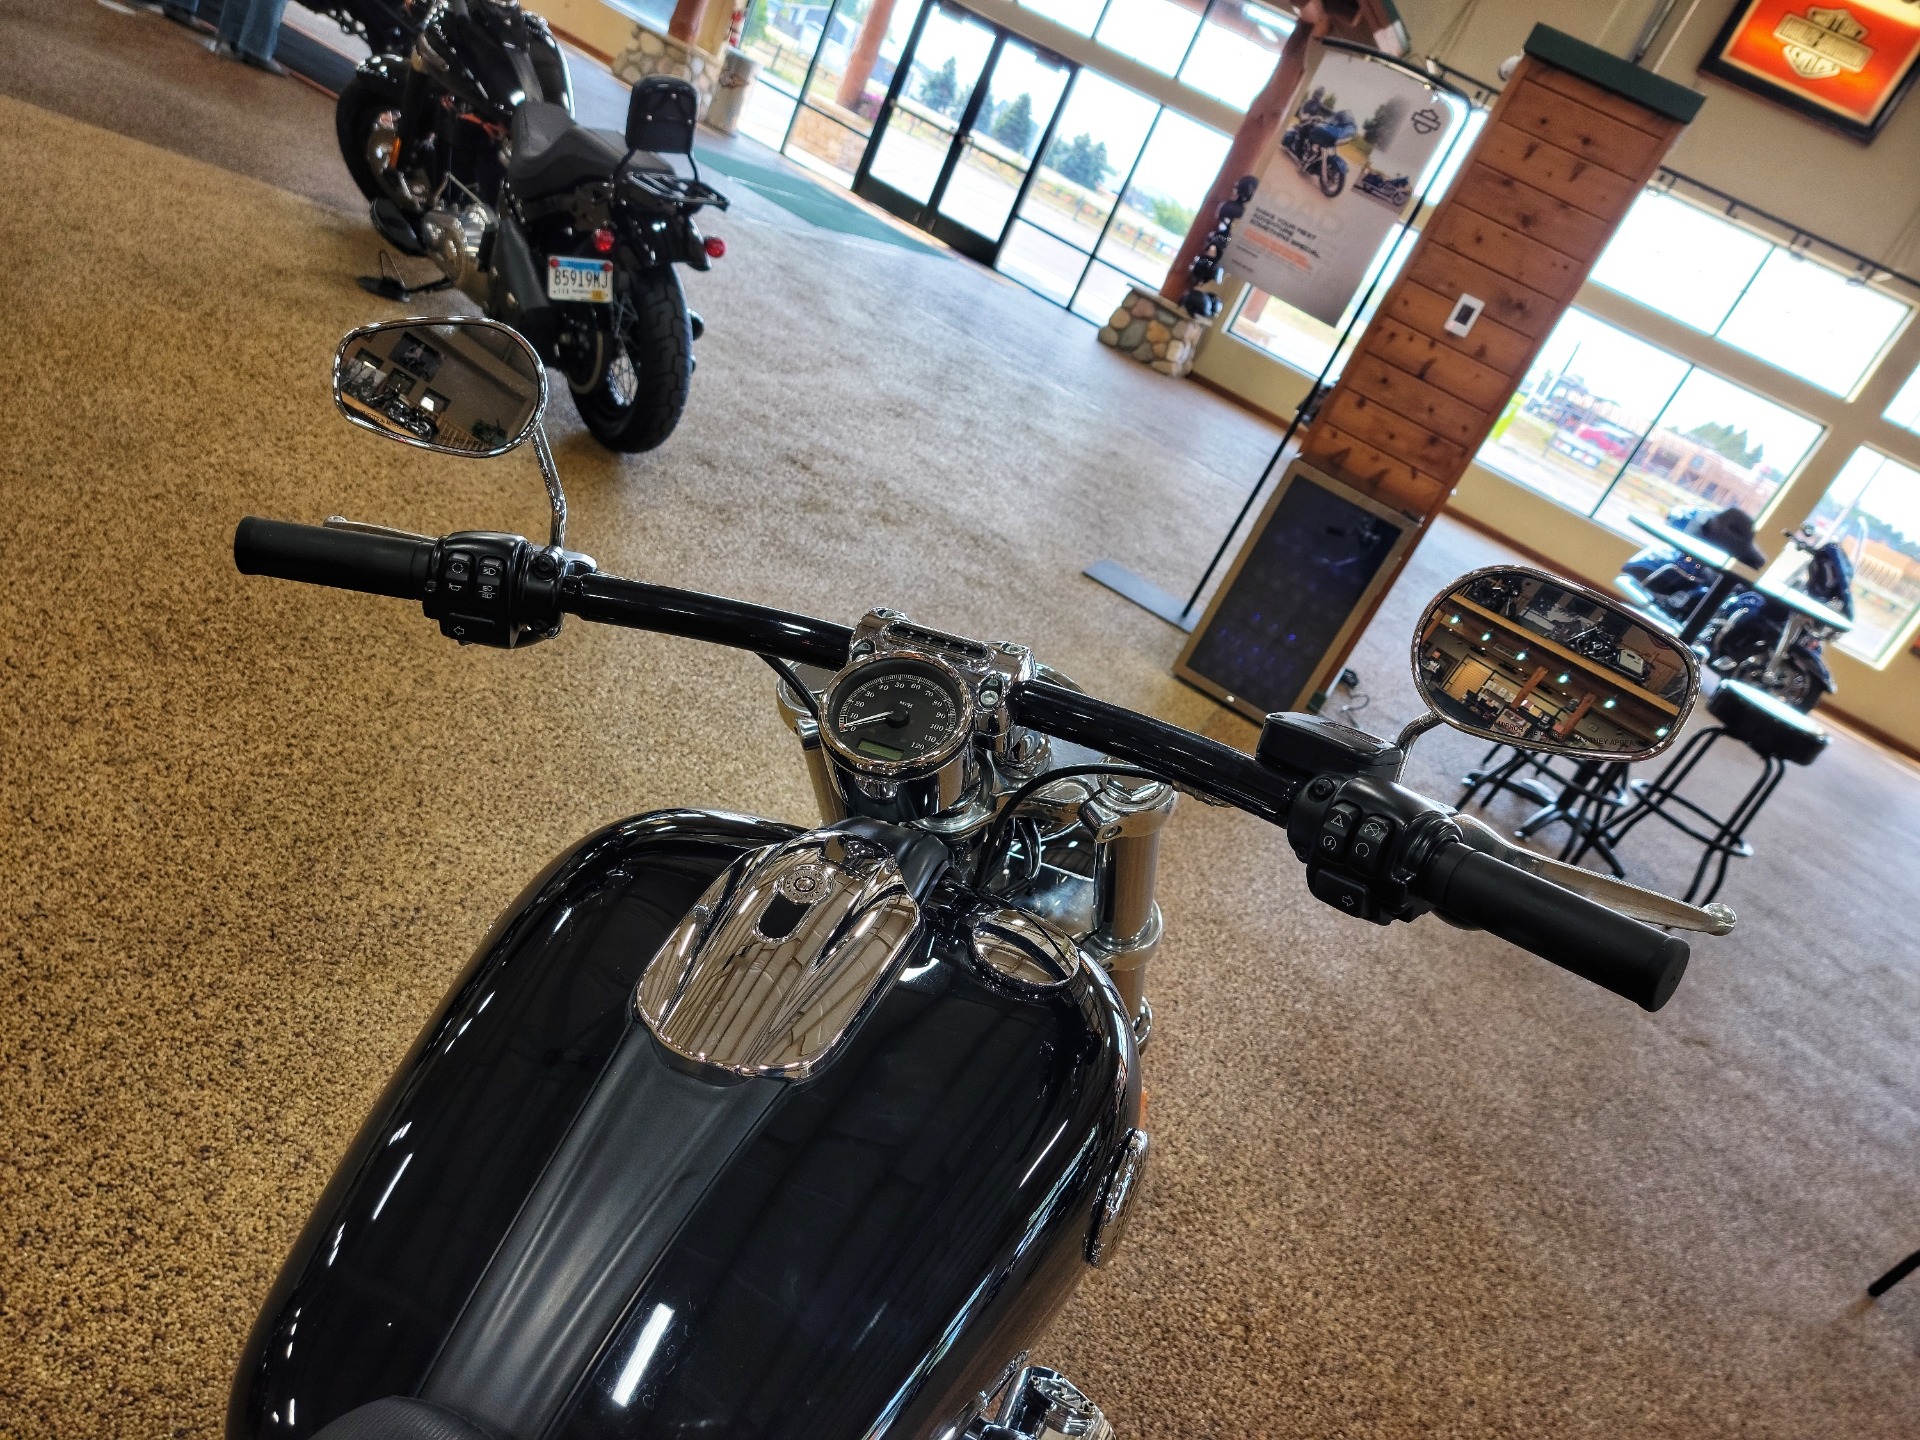 Used 2016 Harley Davidson Breakout Vivid Black Motorcycles In Sauk Rapids Mn B0022